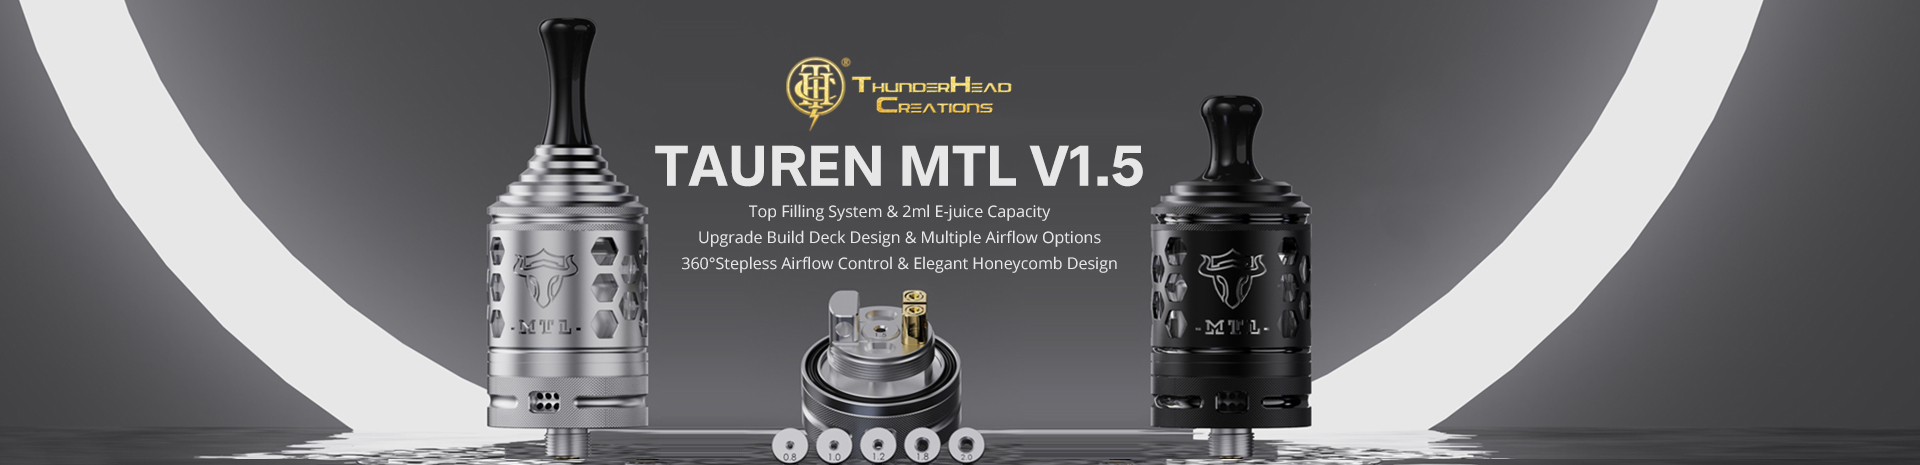 THC Tauren MTL RTA V1.5